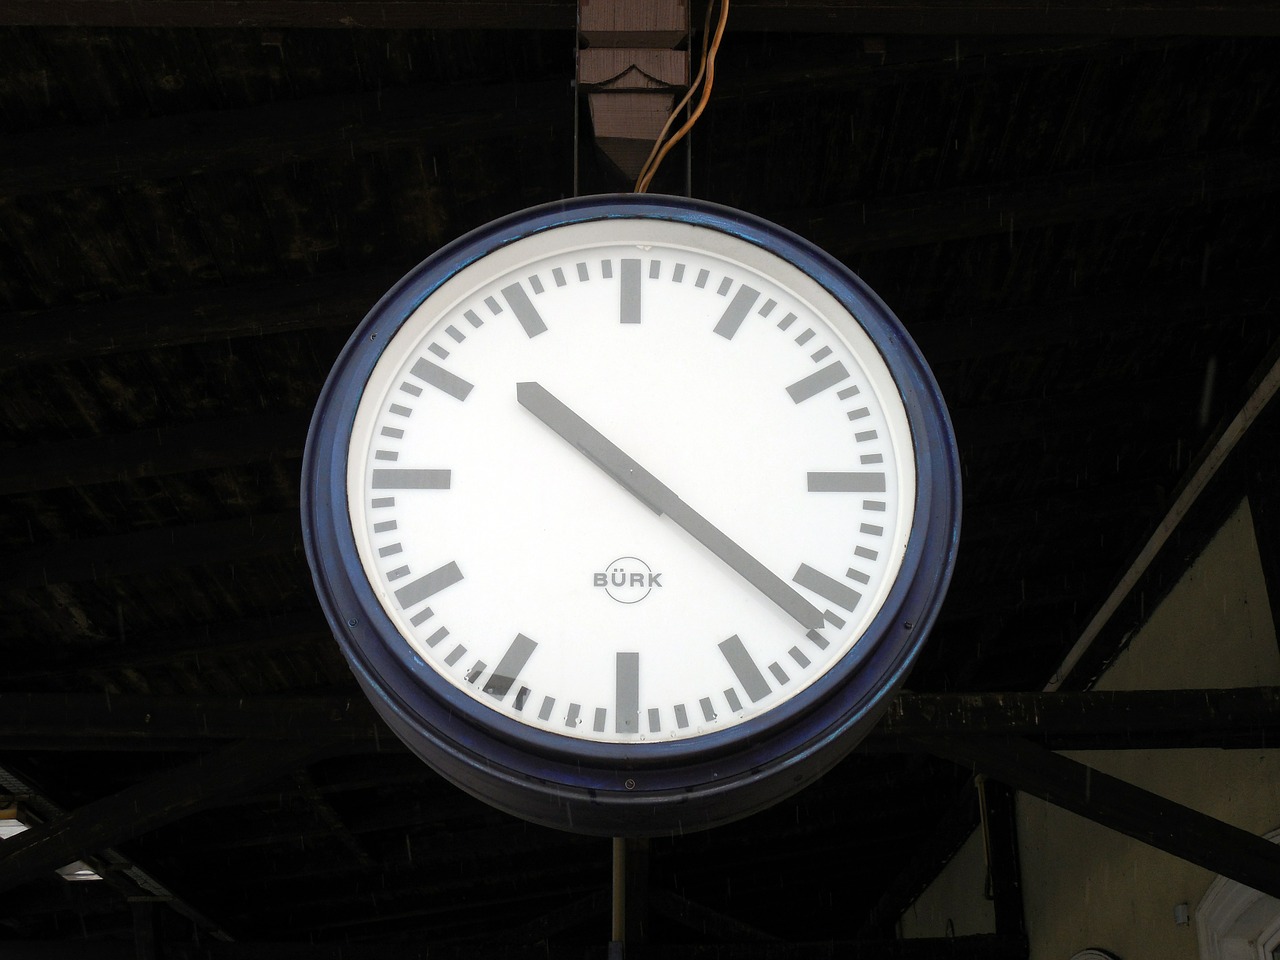 Laikrodis, Traukinių Stotis, Stoties Laikrodis, Laikas, Platforma, Geležinkelių Transportas, Transportas, Išvykimas, Geležinkelis, Traukinys